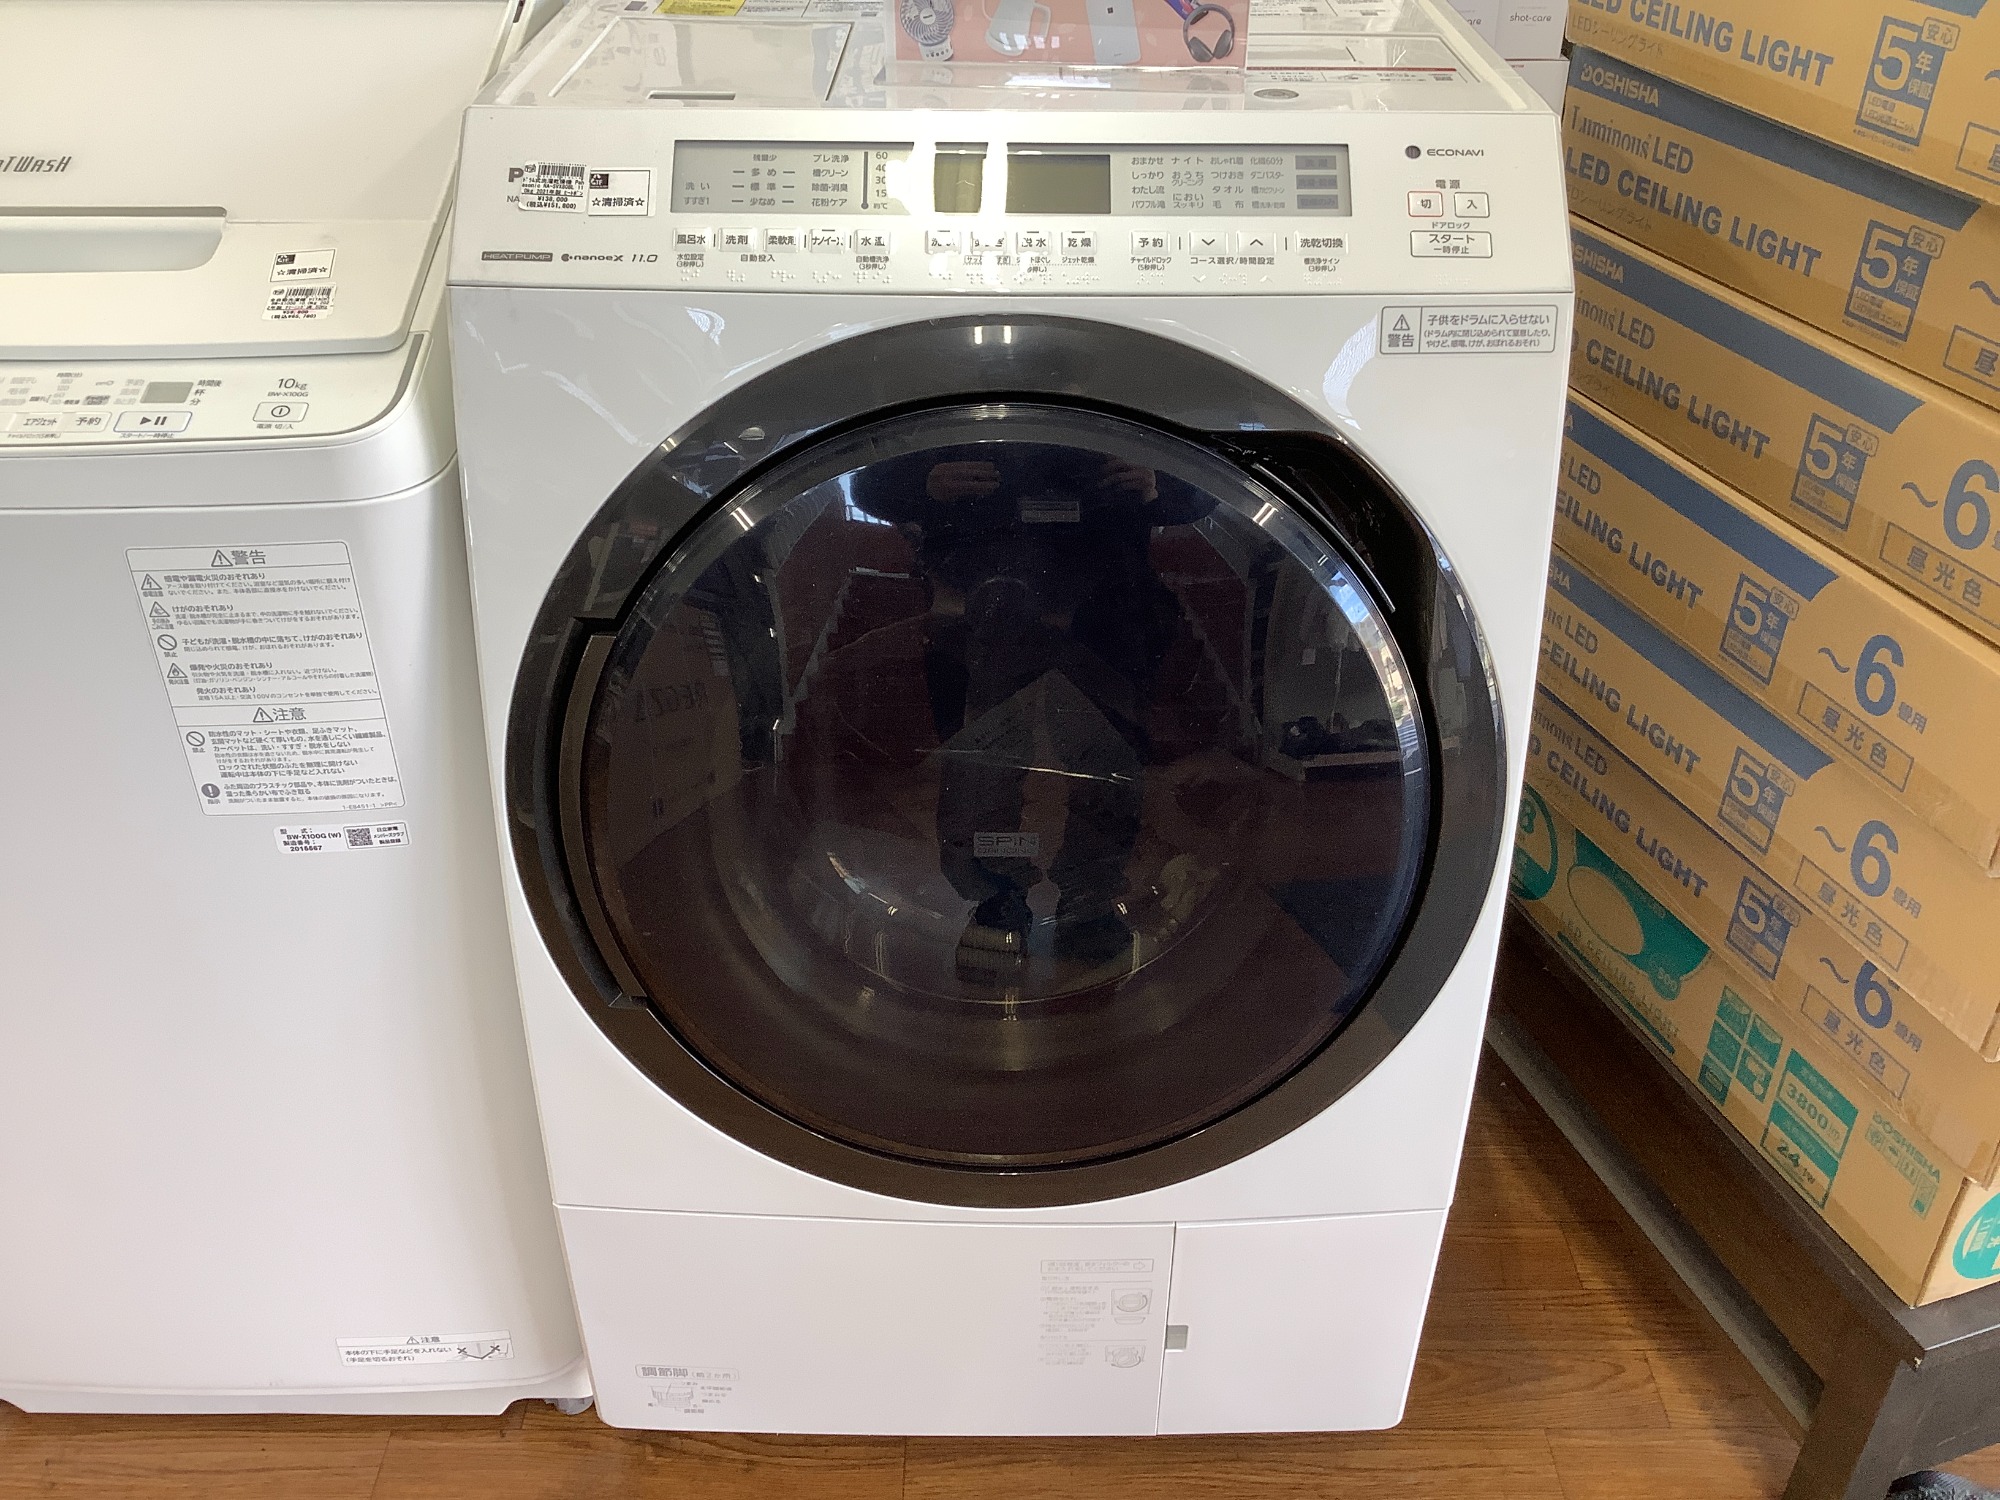 Panasonic（パナソニック）のドラム式洗濯機（NA-SVX80BL）が入荷致し 